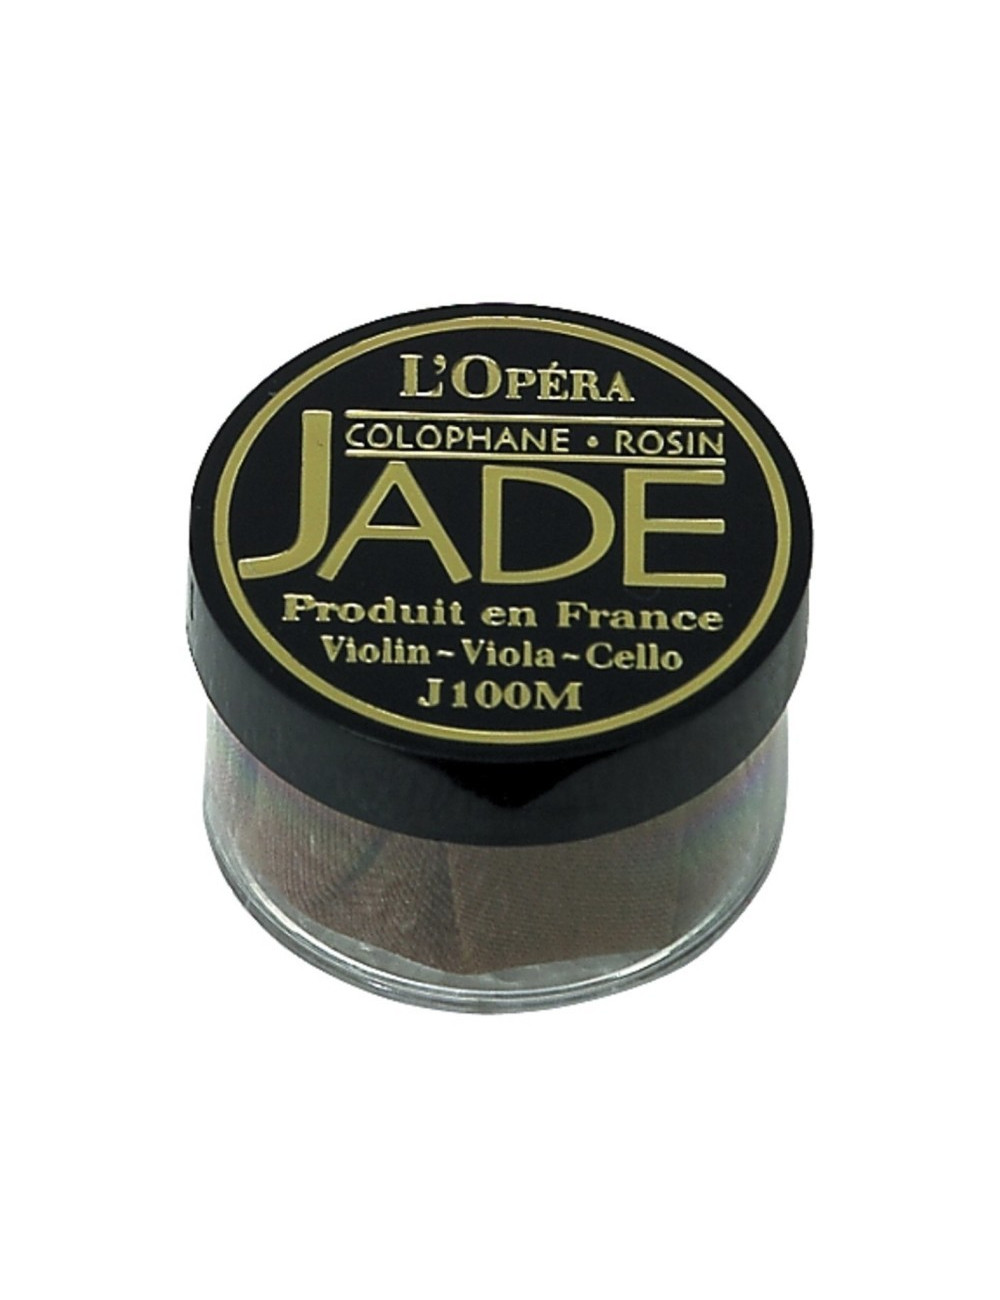 Jade 451062